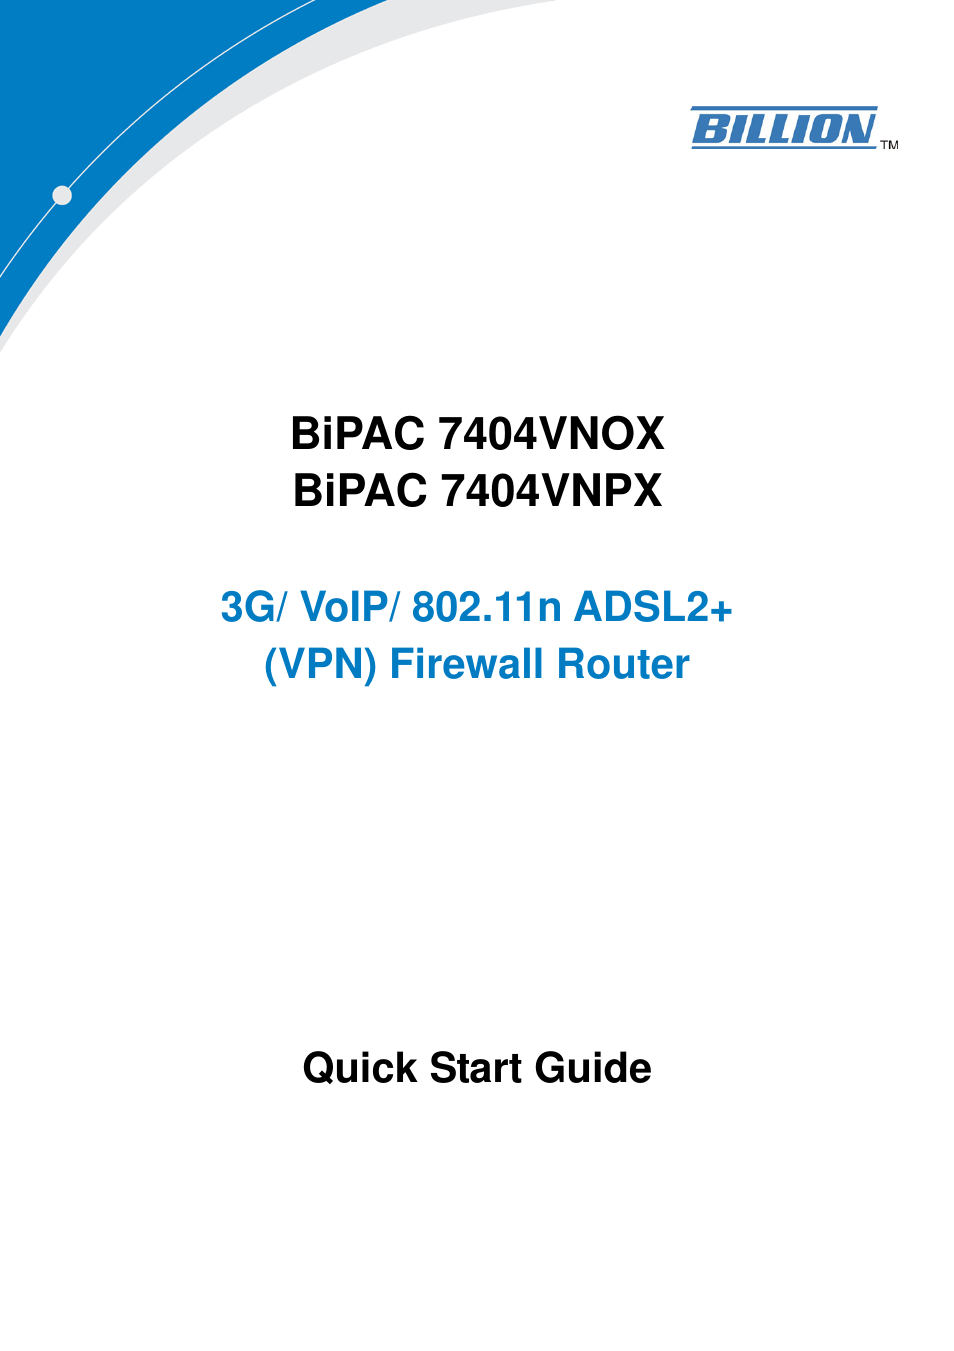 BiPAC 7404VNPX